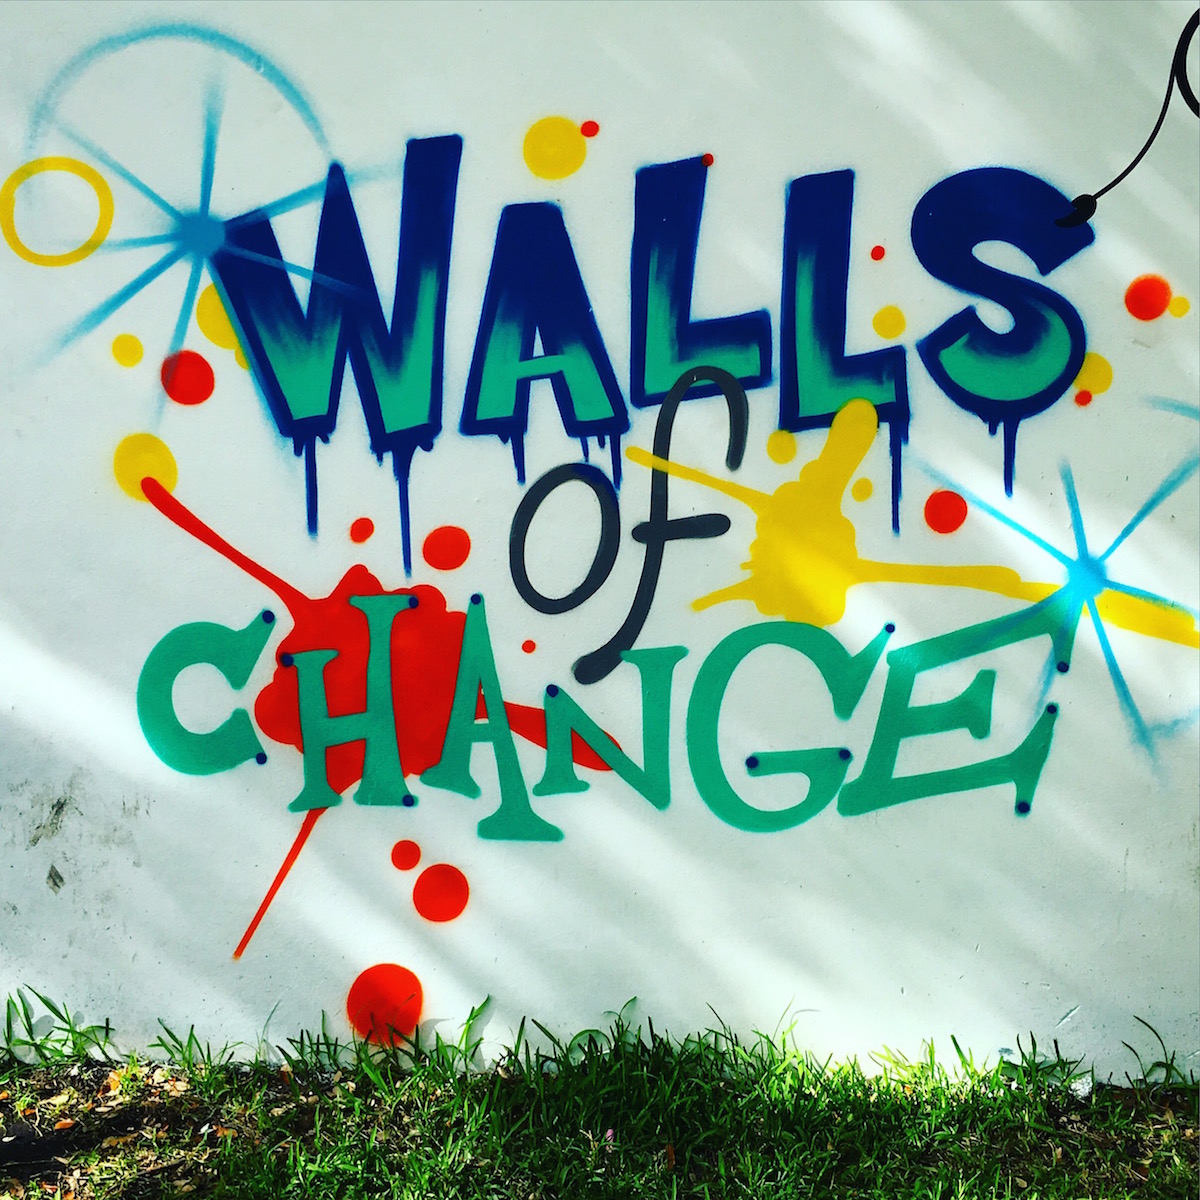 wynwood walls - walls of change